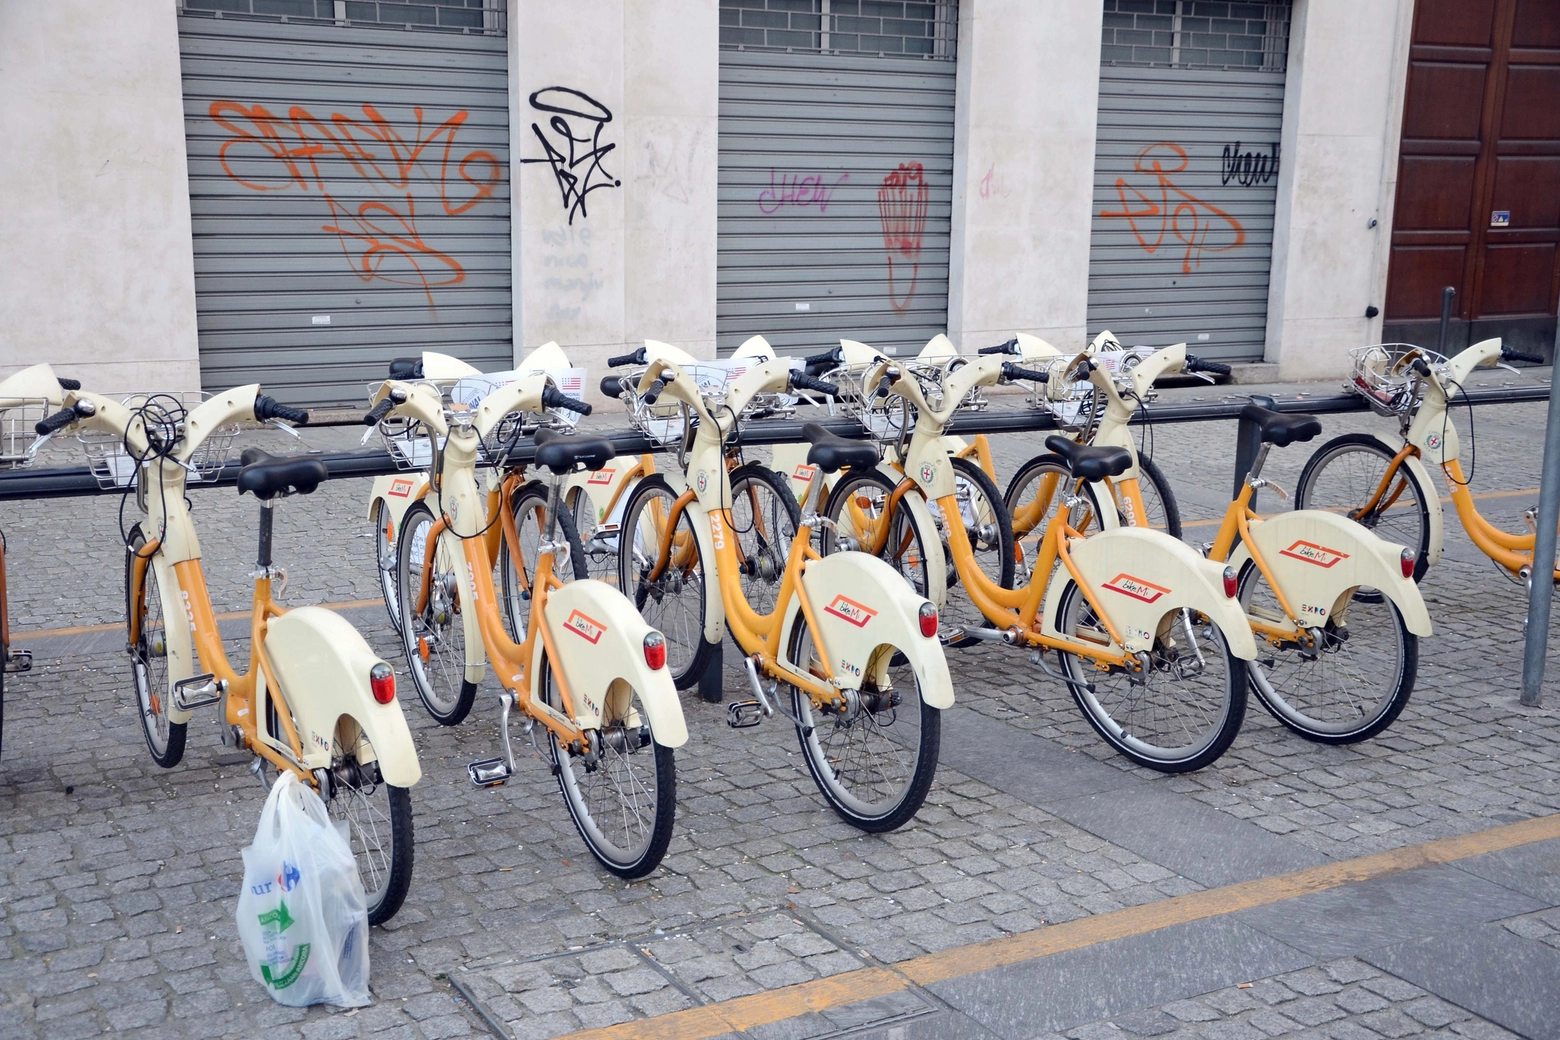 La flotta delle bici a noleggio a Milano si arricchisce di nuovi mezzi